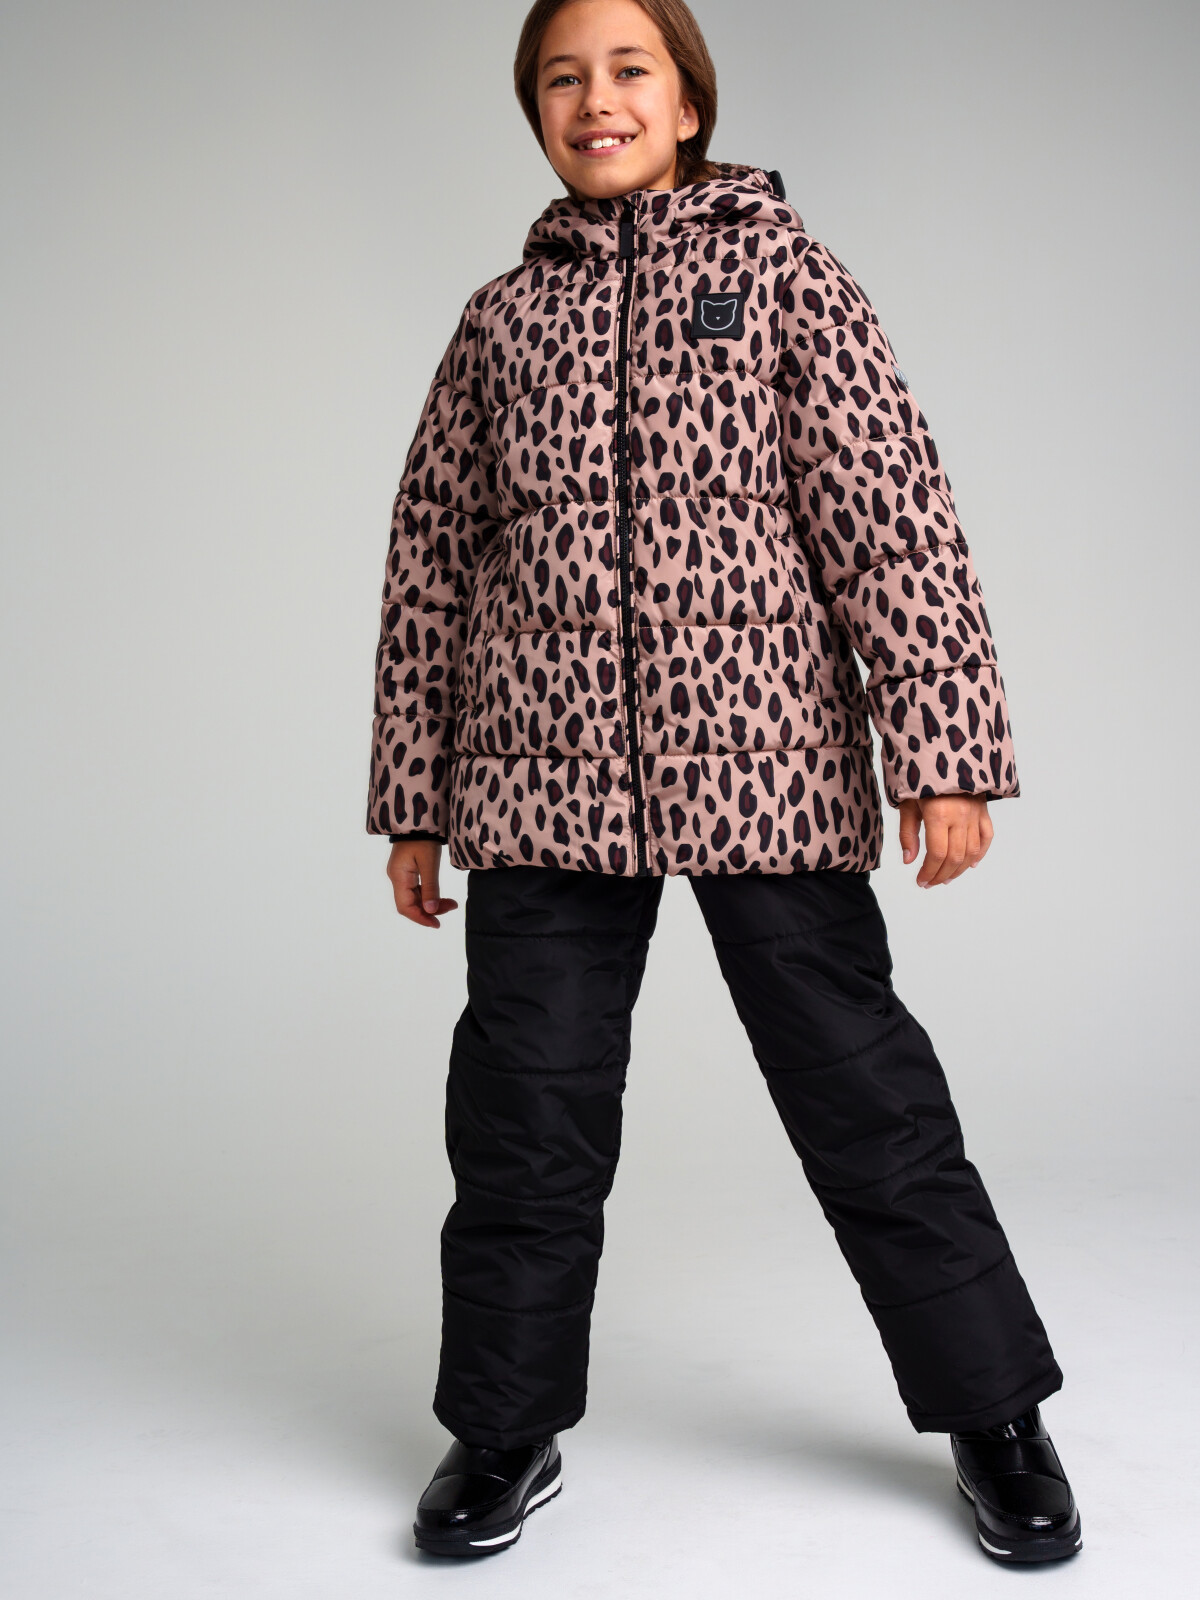 Комплект для девочек PlayToday: куртка, брюки, черный,коричневый, 146